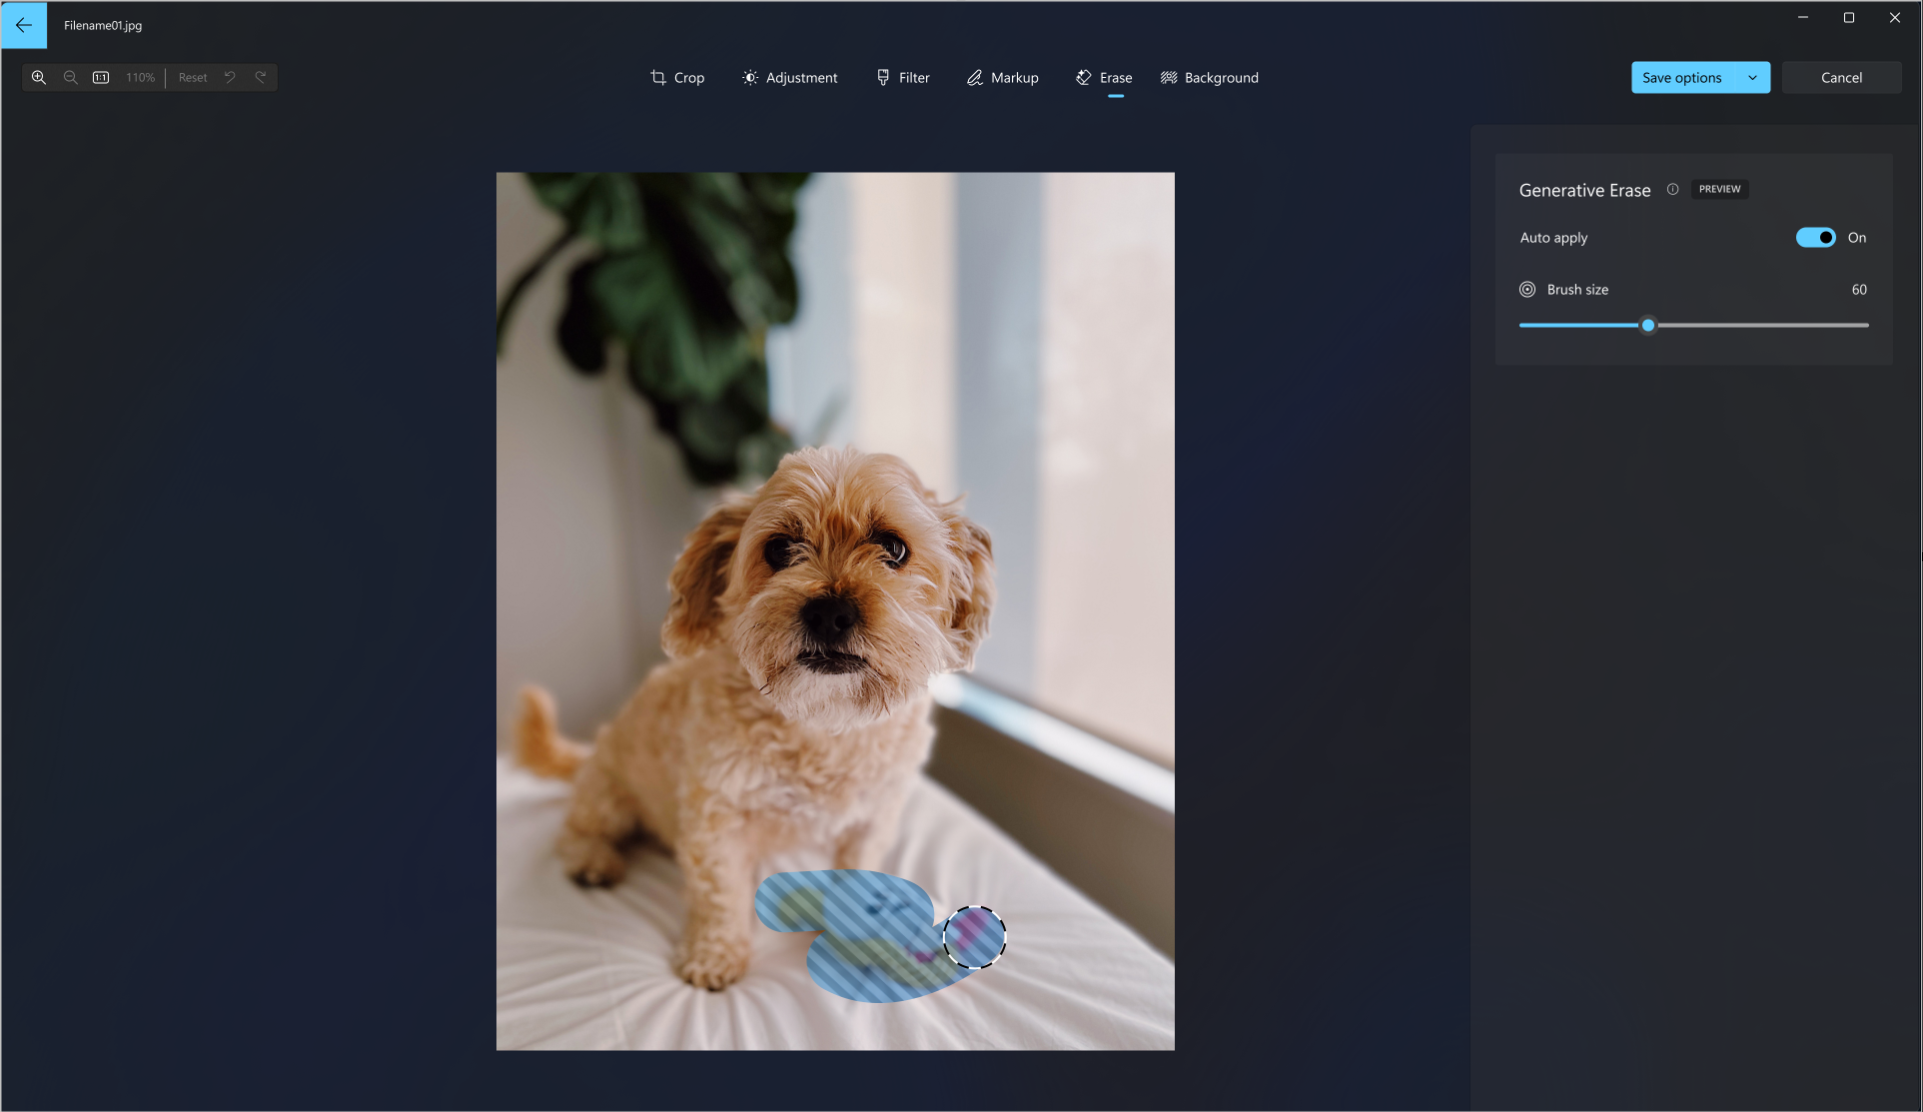 สกรีนช็อตของเครื่องมือลบเชิงสร้างสรรค์ที่ใช้บนรูปถ่ายของสุนัขเพื่อลบของเล่นสุนัขออกจากรูปภาพ